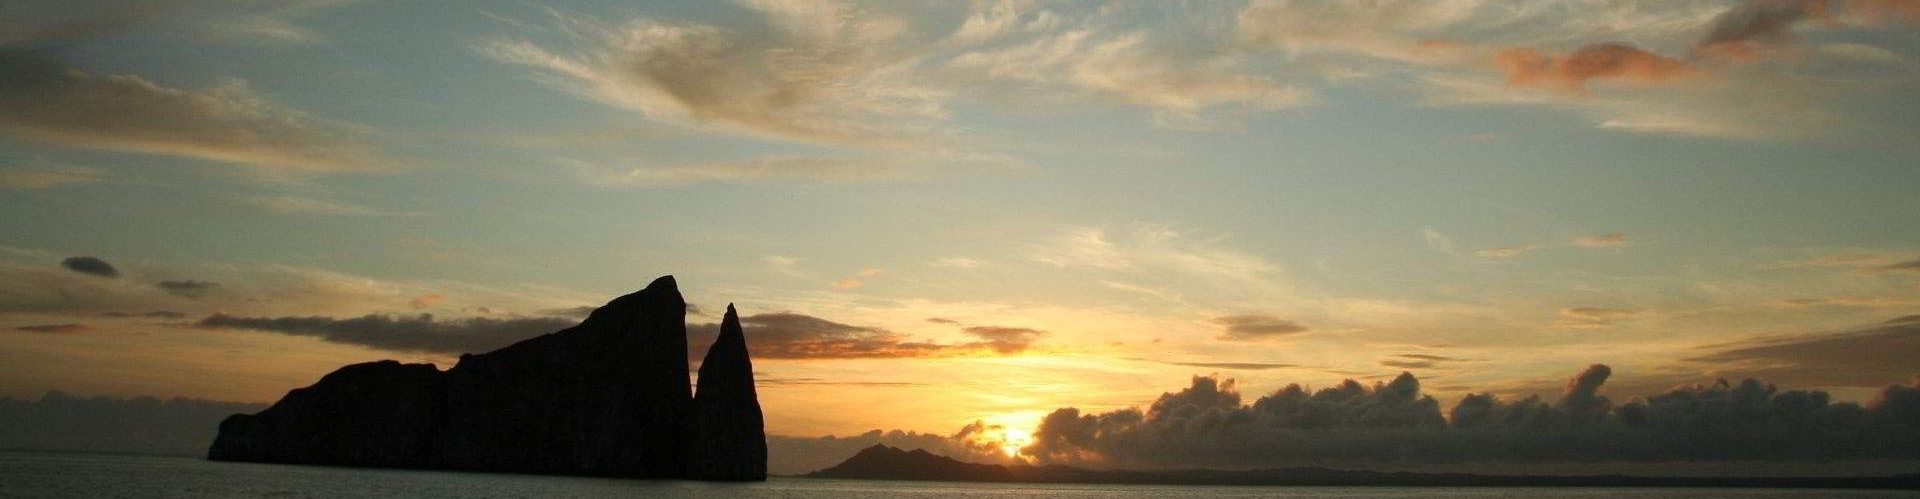 Kicker Rock at sunset, Galapagos